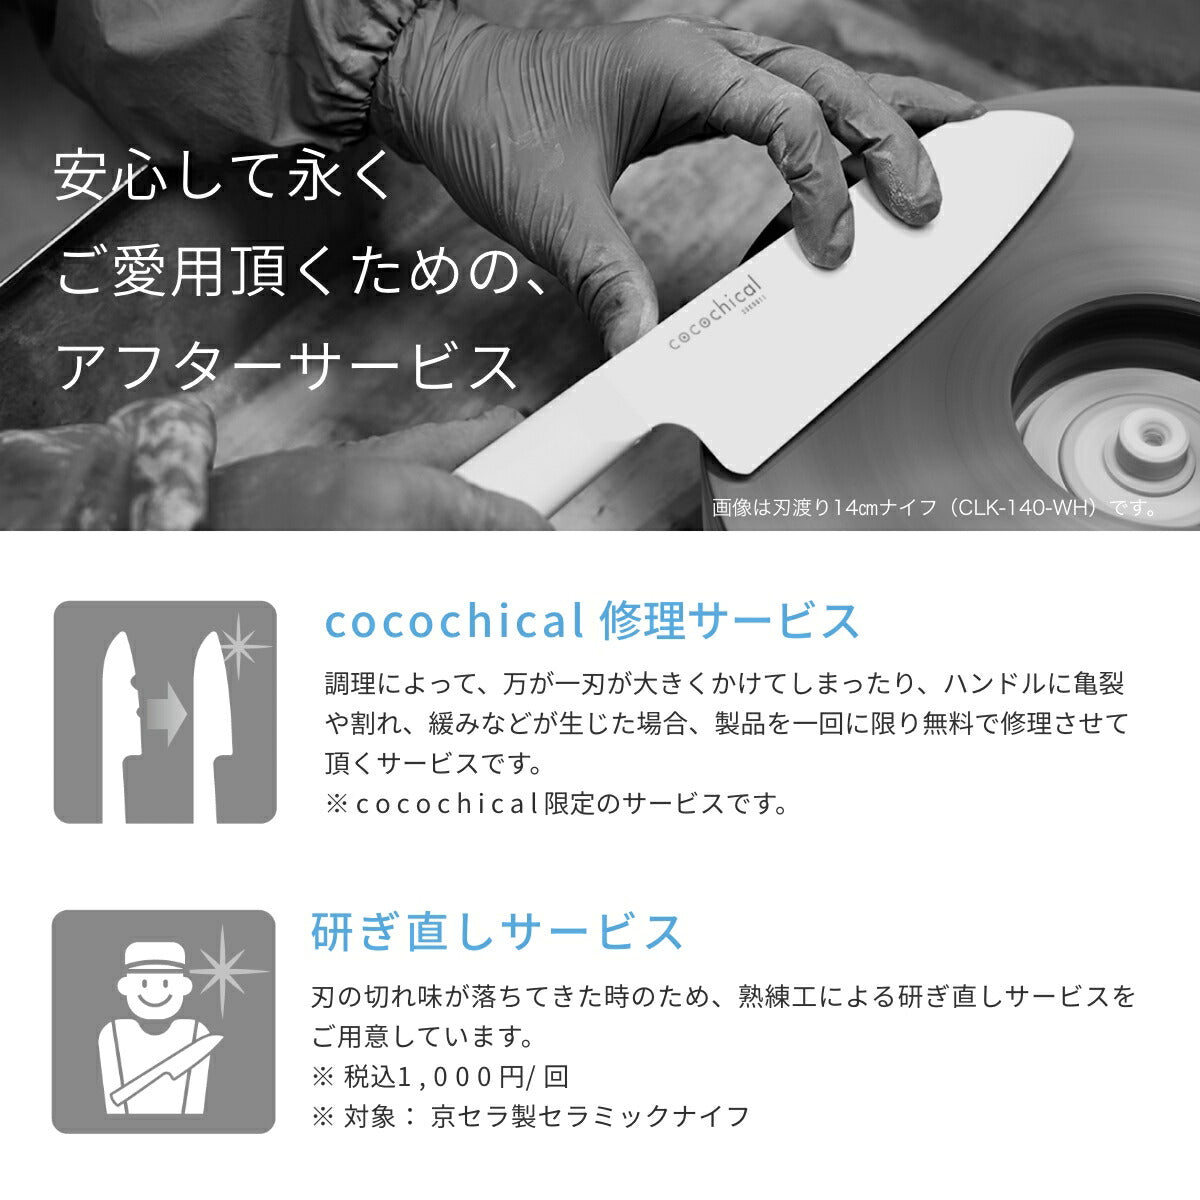 京セラcocochical(ココチカル)セラミックナイフの修理サービスと研ぎ直しサービス